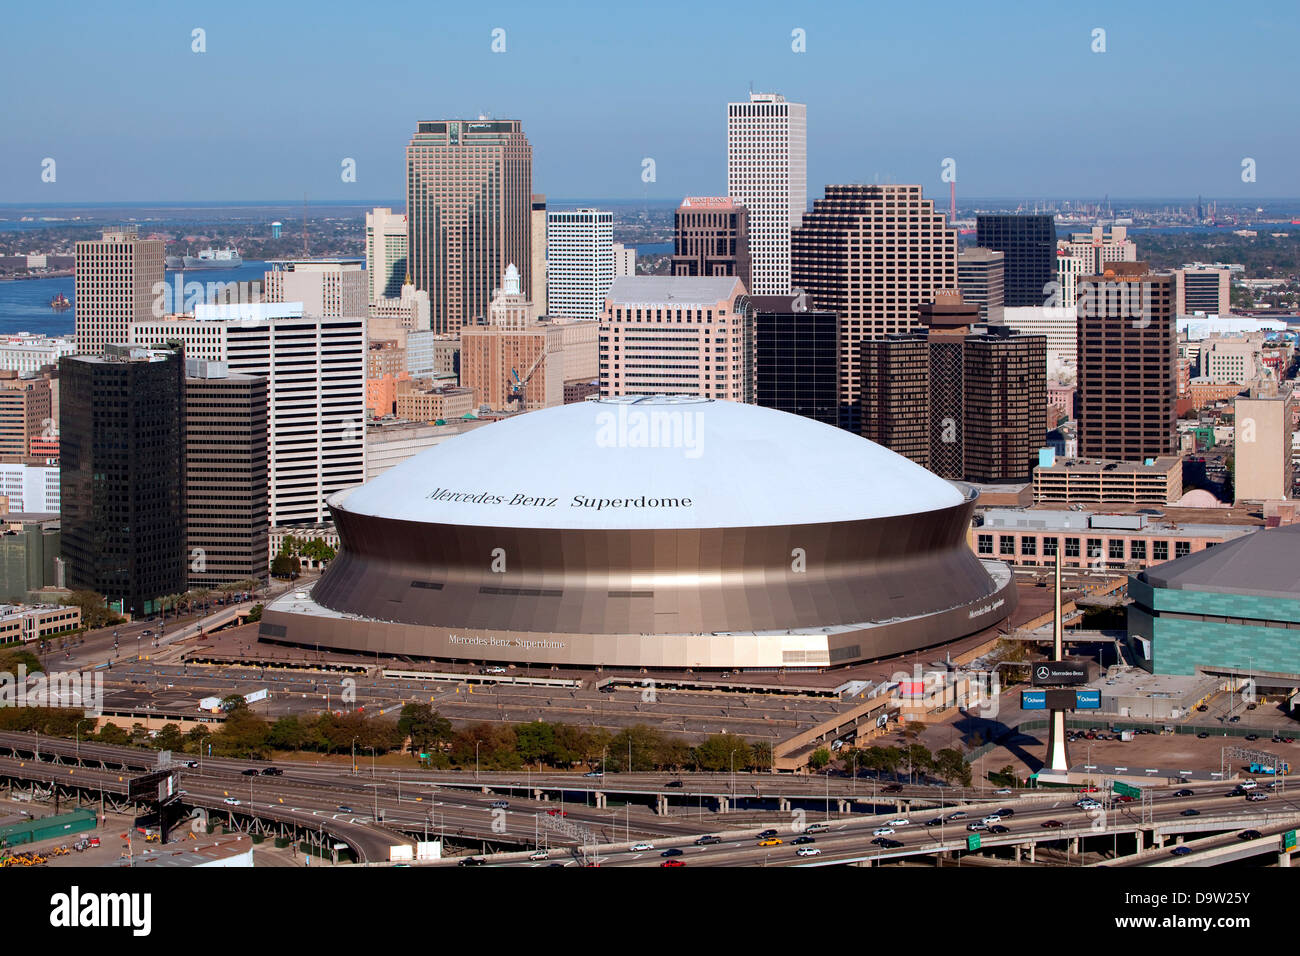 Luftaufnahme Der Innenstadt Von New Orleans Louisiana Mit Der Mercedes Benz Superdome Im Vordergrund Stockfotografie Alamy